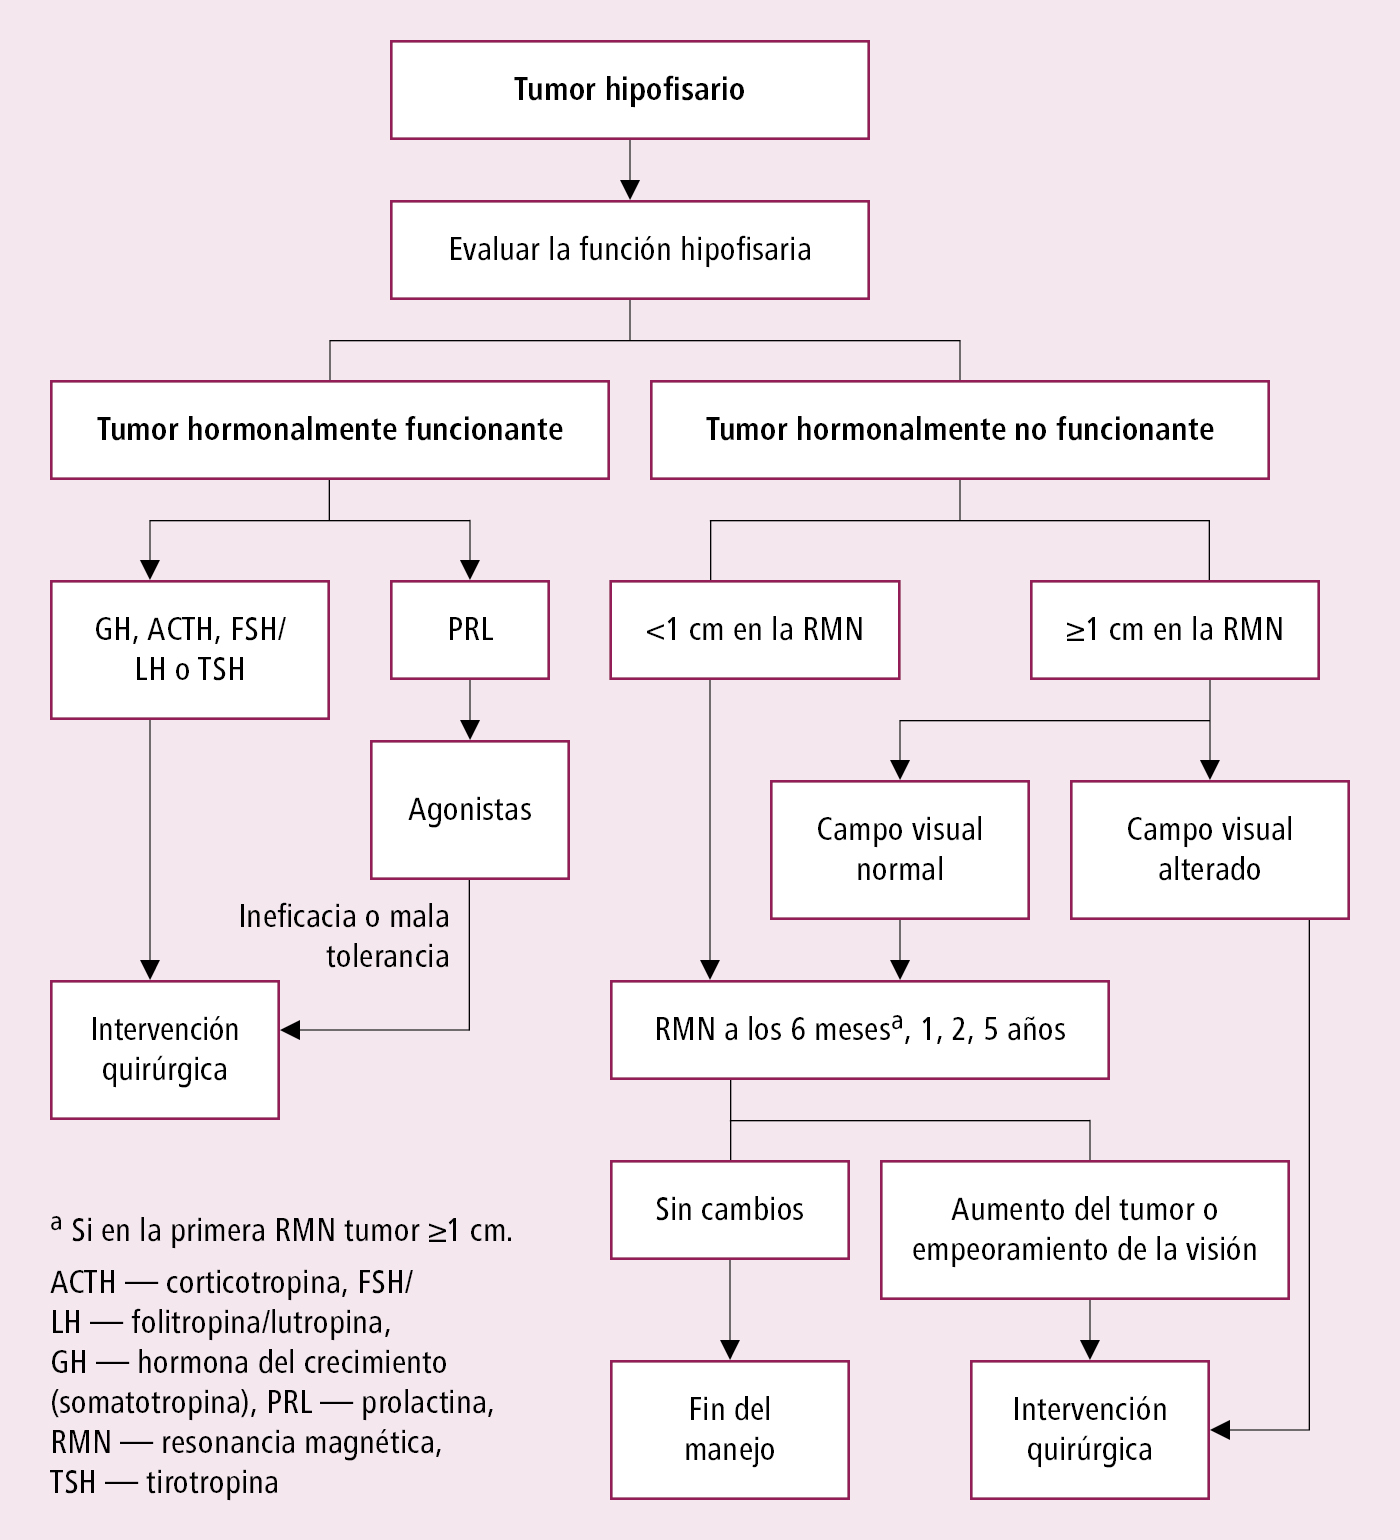    Fig. 8.4-1.  Algoritmo de manejo de los tumores hipofisarios 